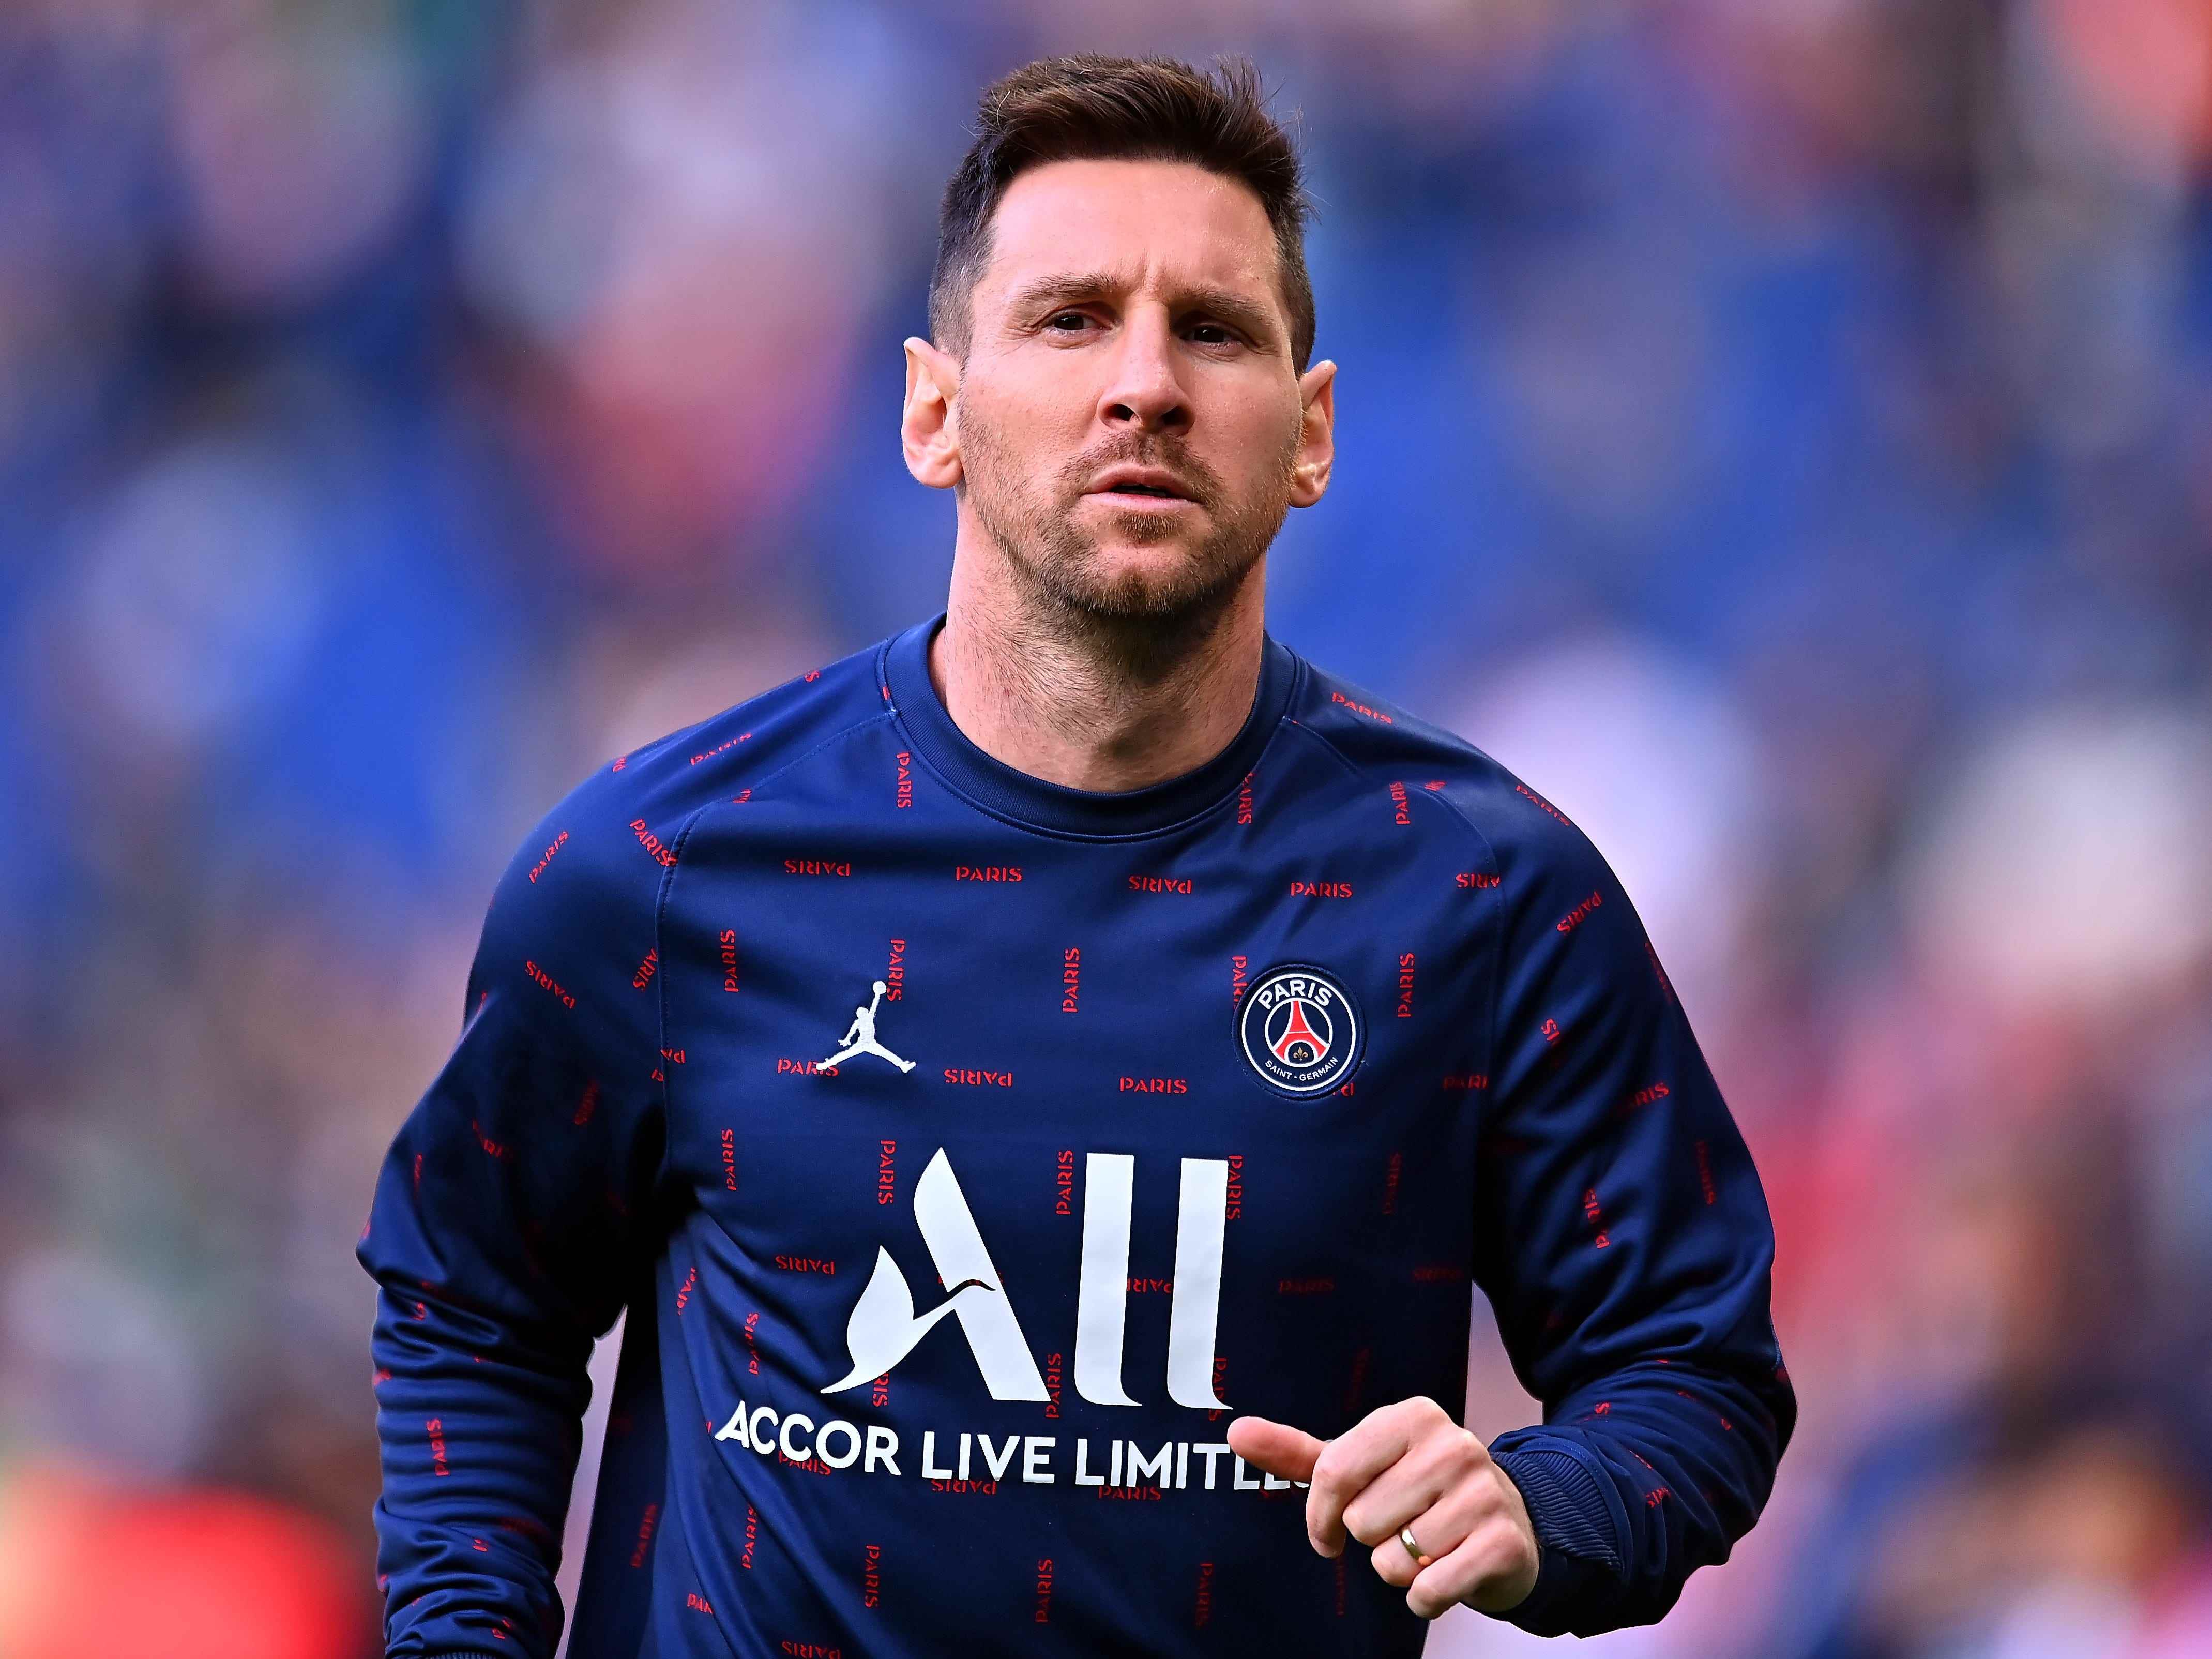 Leo Messi von Paris Saint-Germain schaut beim Aufwärmen vor dem Uber Eats-Spiel der Ligue 1 zwischen Paris Saint Germain und ESTAC Troyes im Parc des Princes am 08. Mai 2022 in Paris, Frankreich, zu.